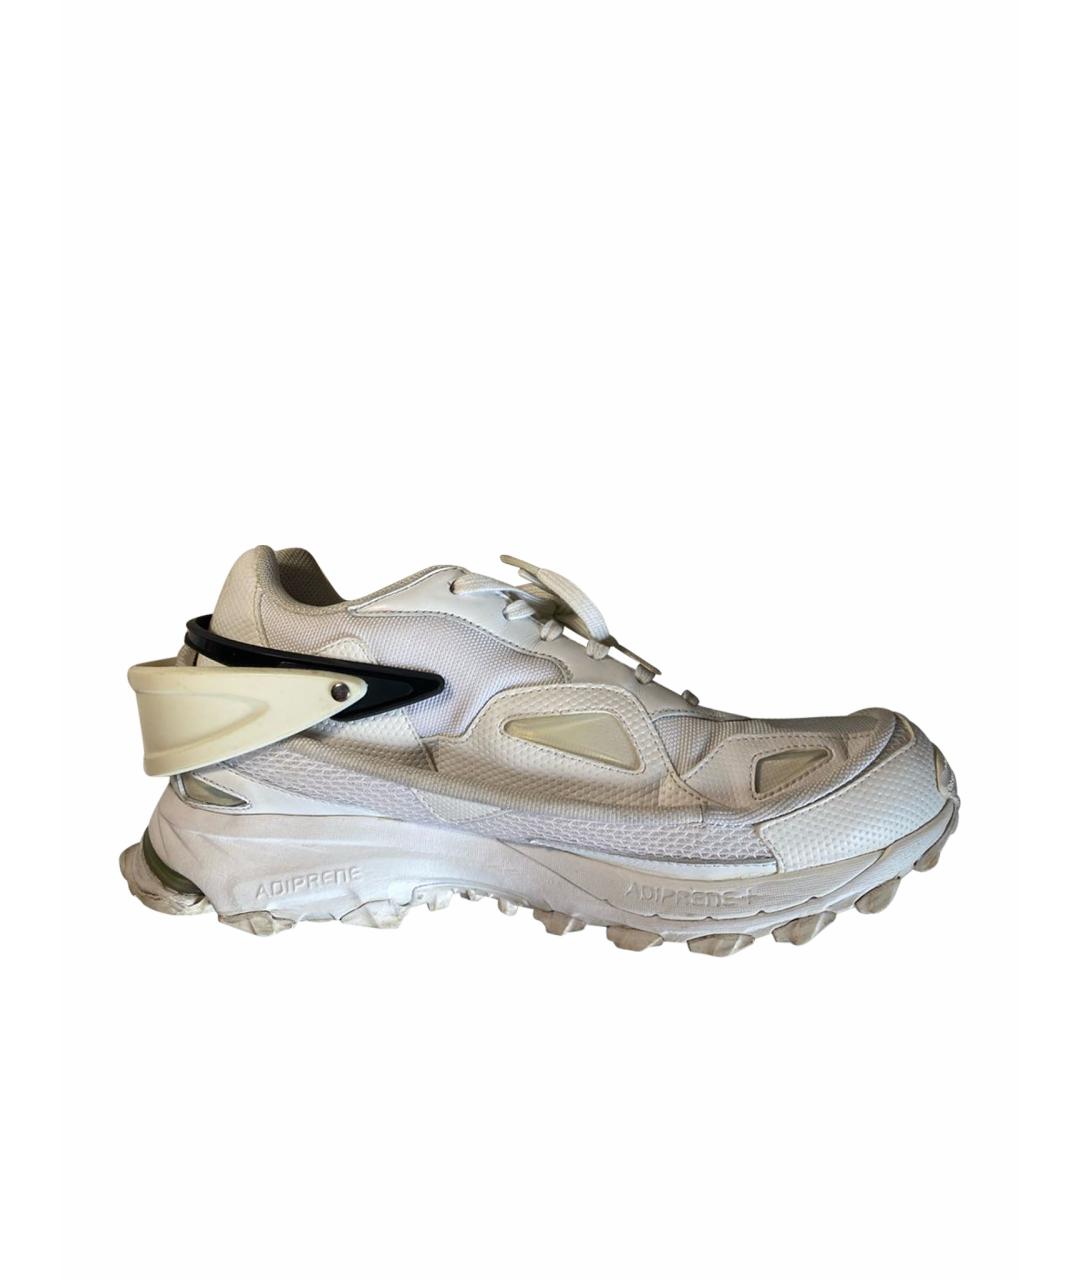 ADIDAS X RAF SIMONS Белые текстильные низкие кроссовки / кеды, фото 1